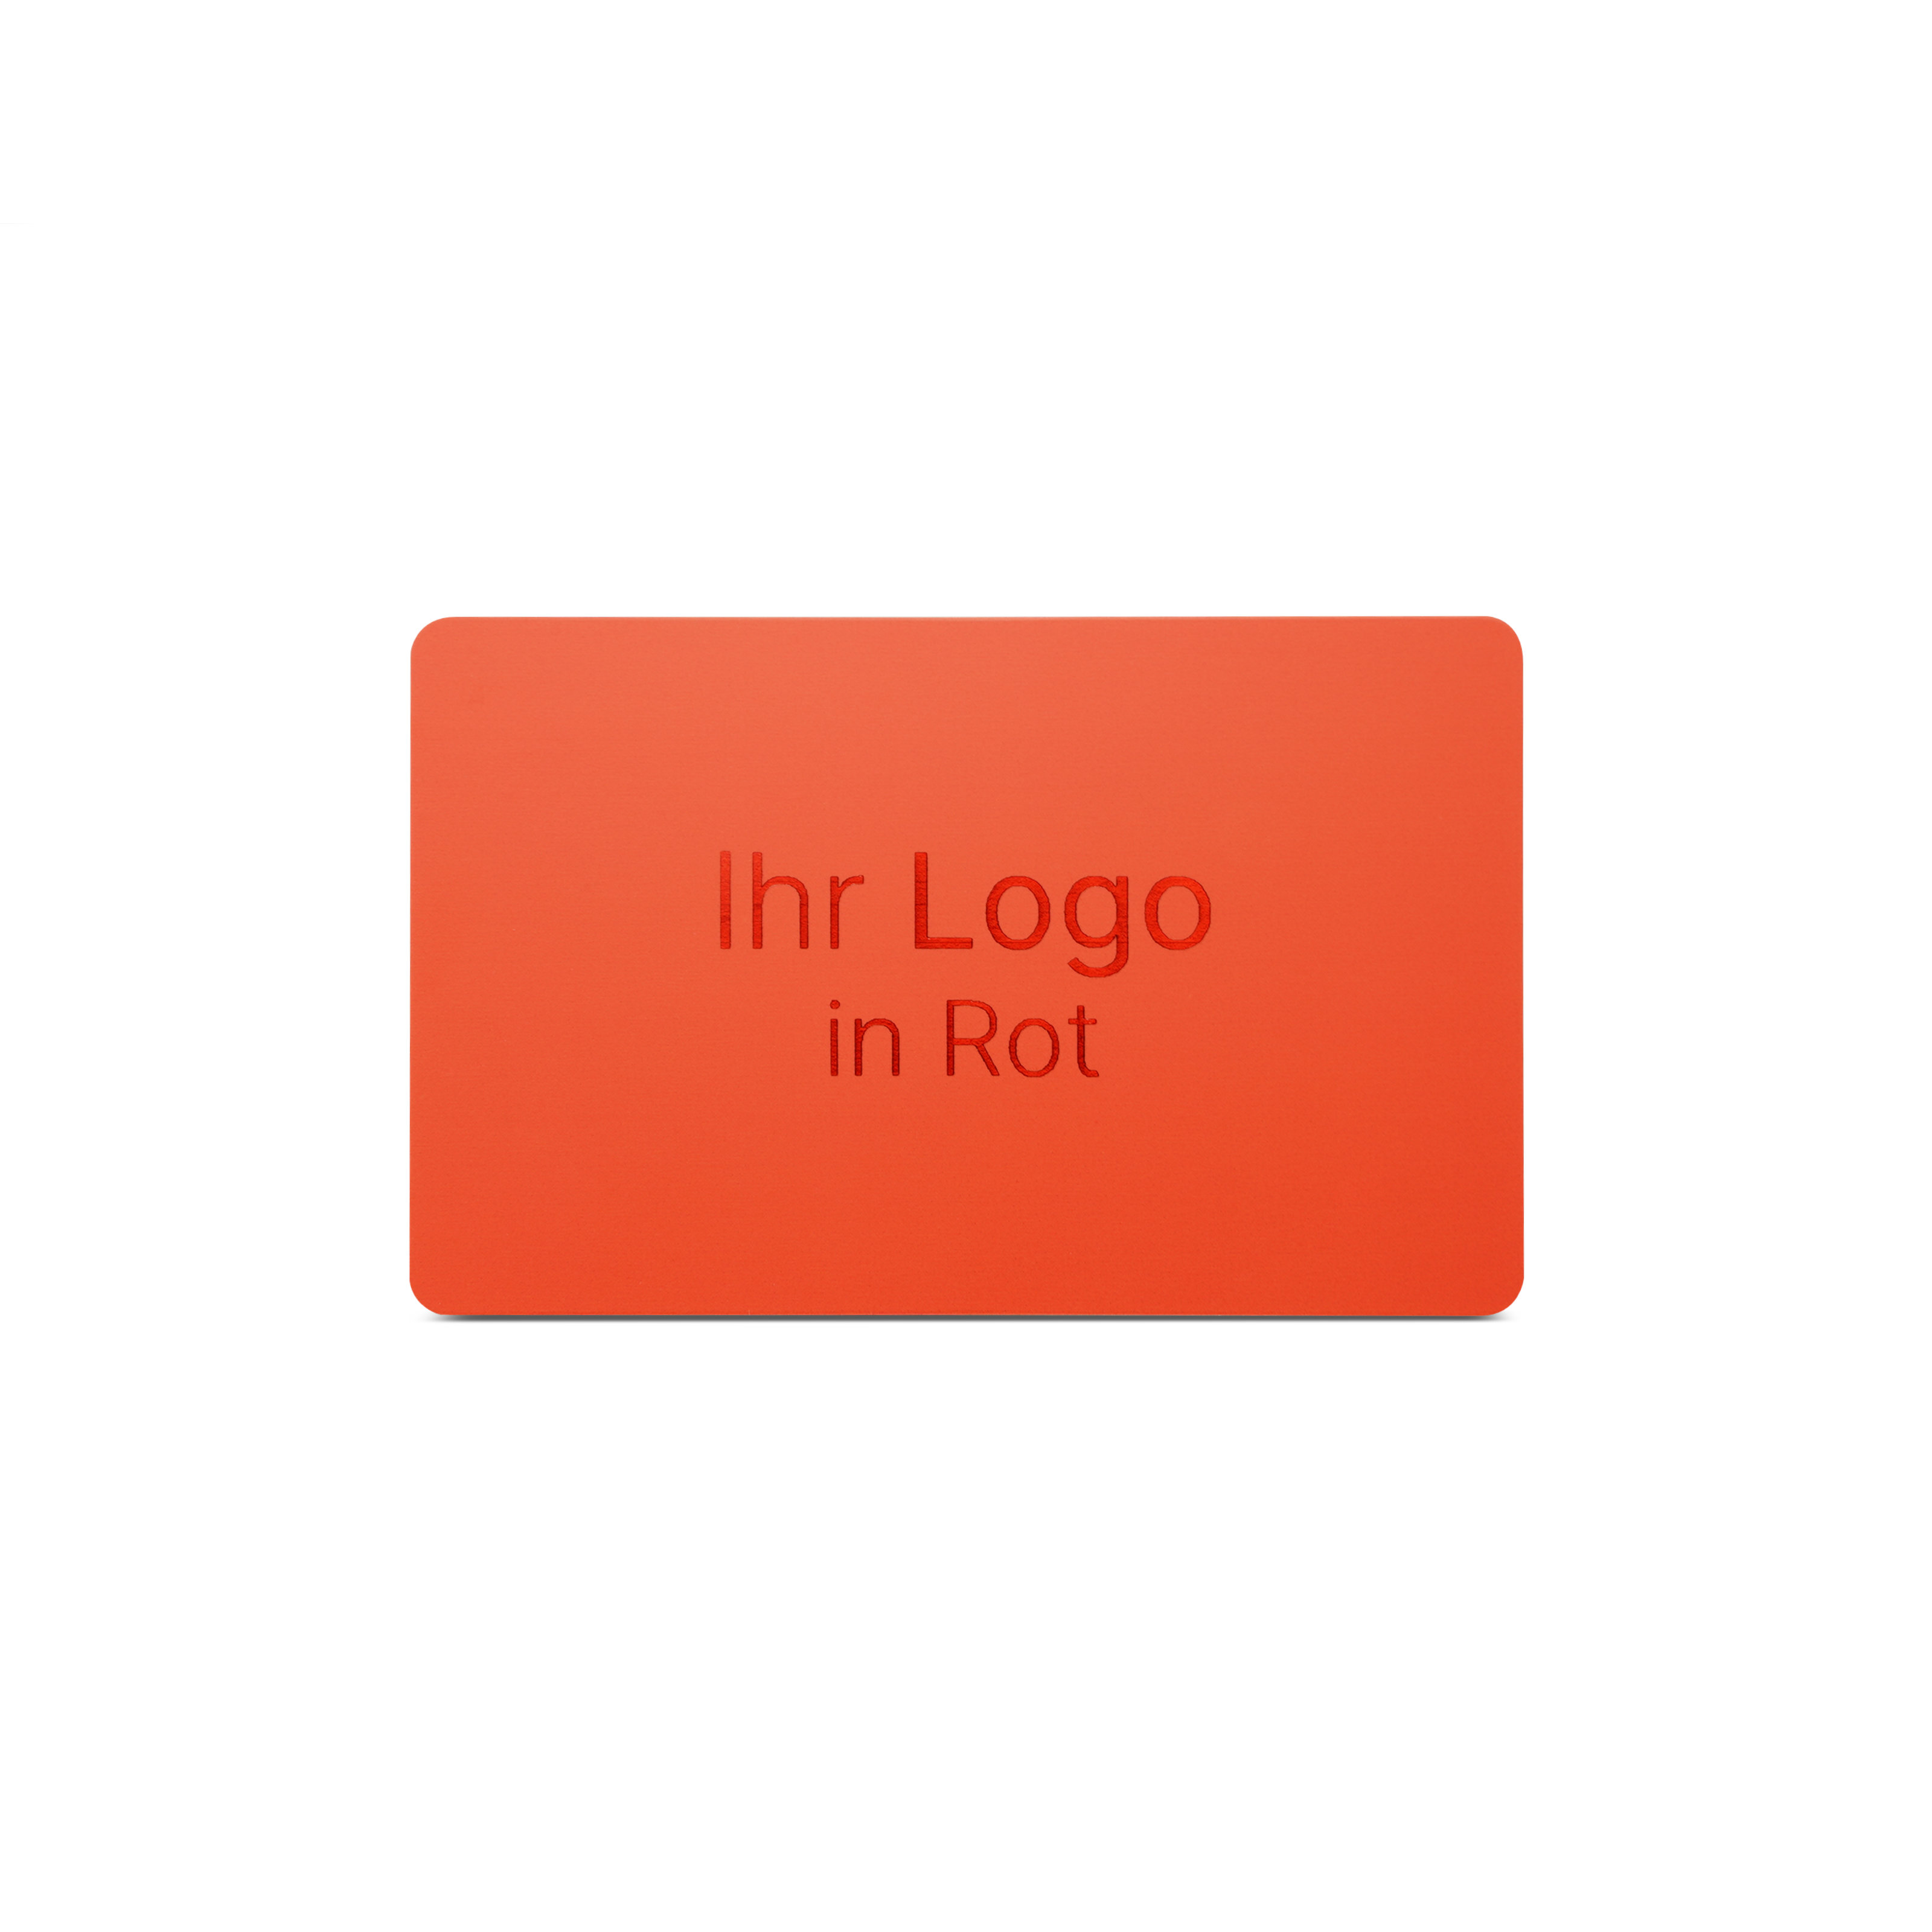 Rote NFC Karte aus PVC mit Bedruckung "Ihr Logo in Rot"